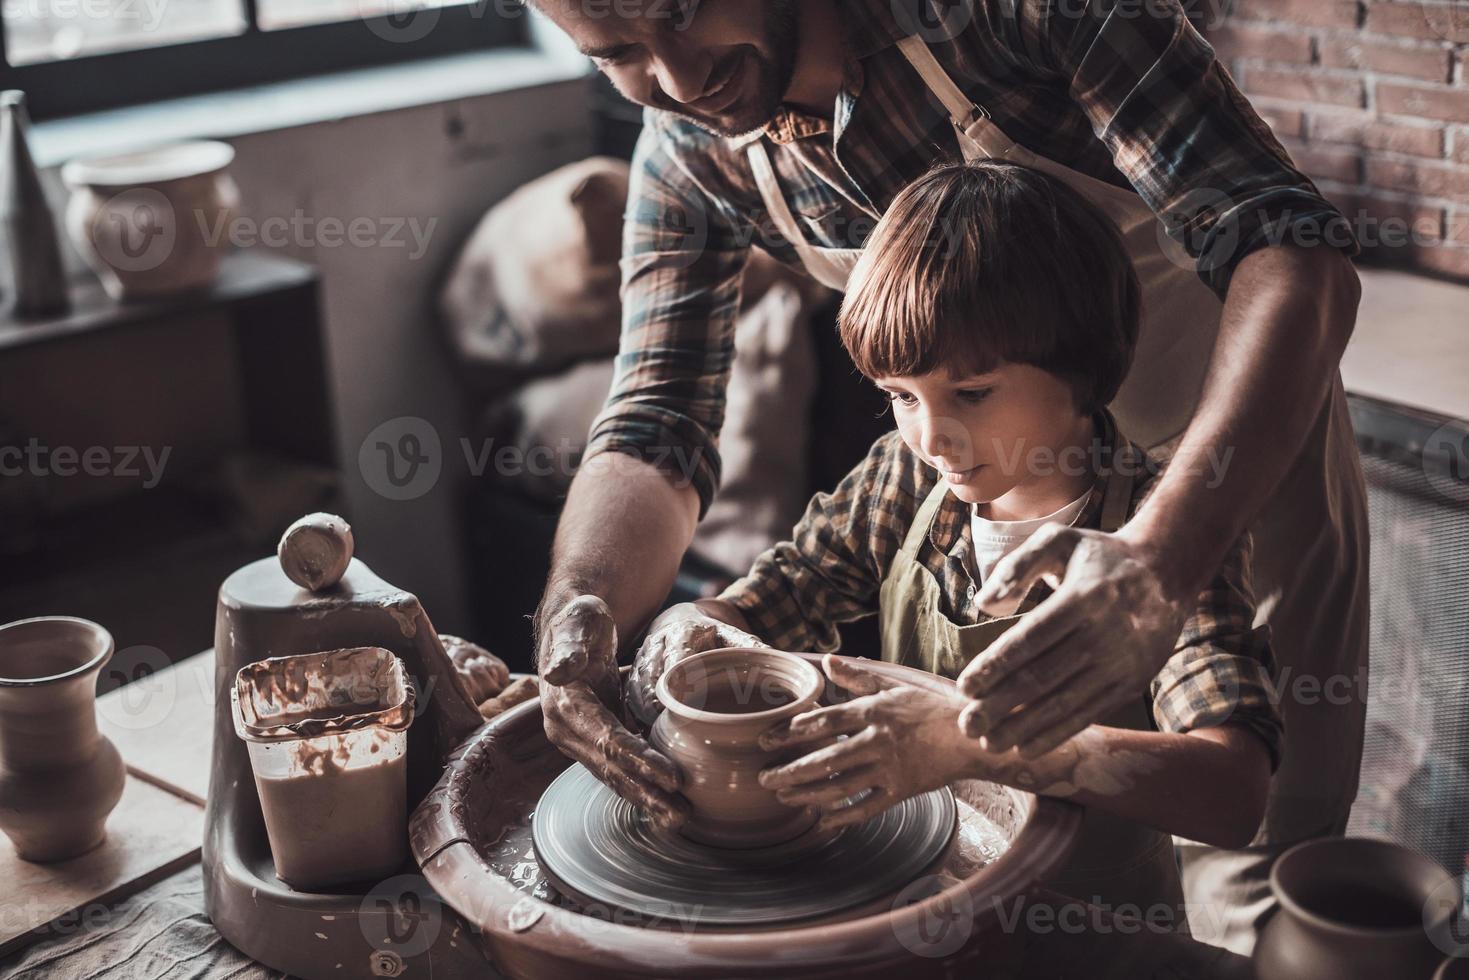 aprendiendo nuevas habilidades de alfarero. vista superior de un joven alegre y un niño pequeño haciendo vasijas de cerámica en la clase de cerámica foto